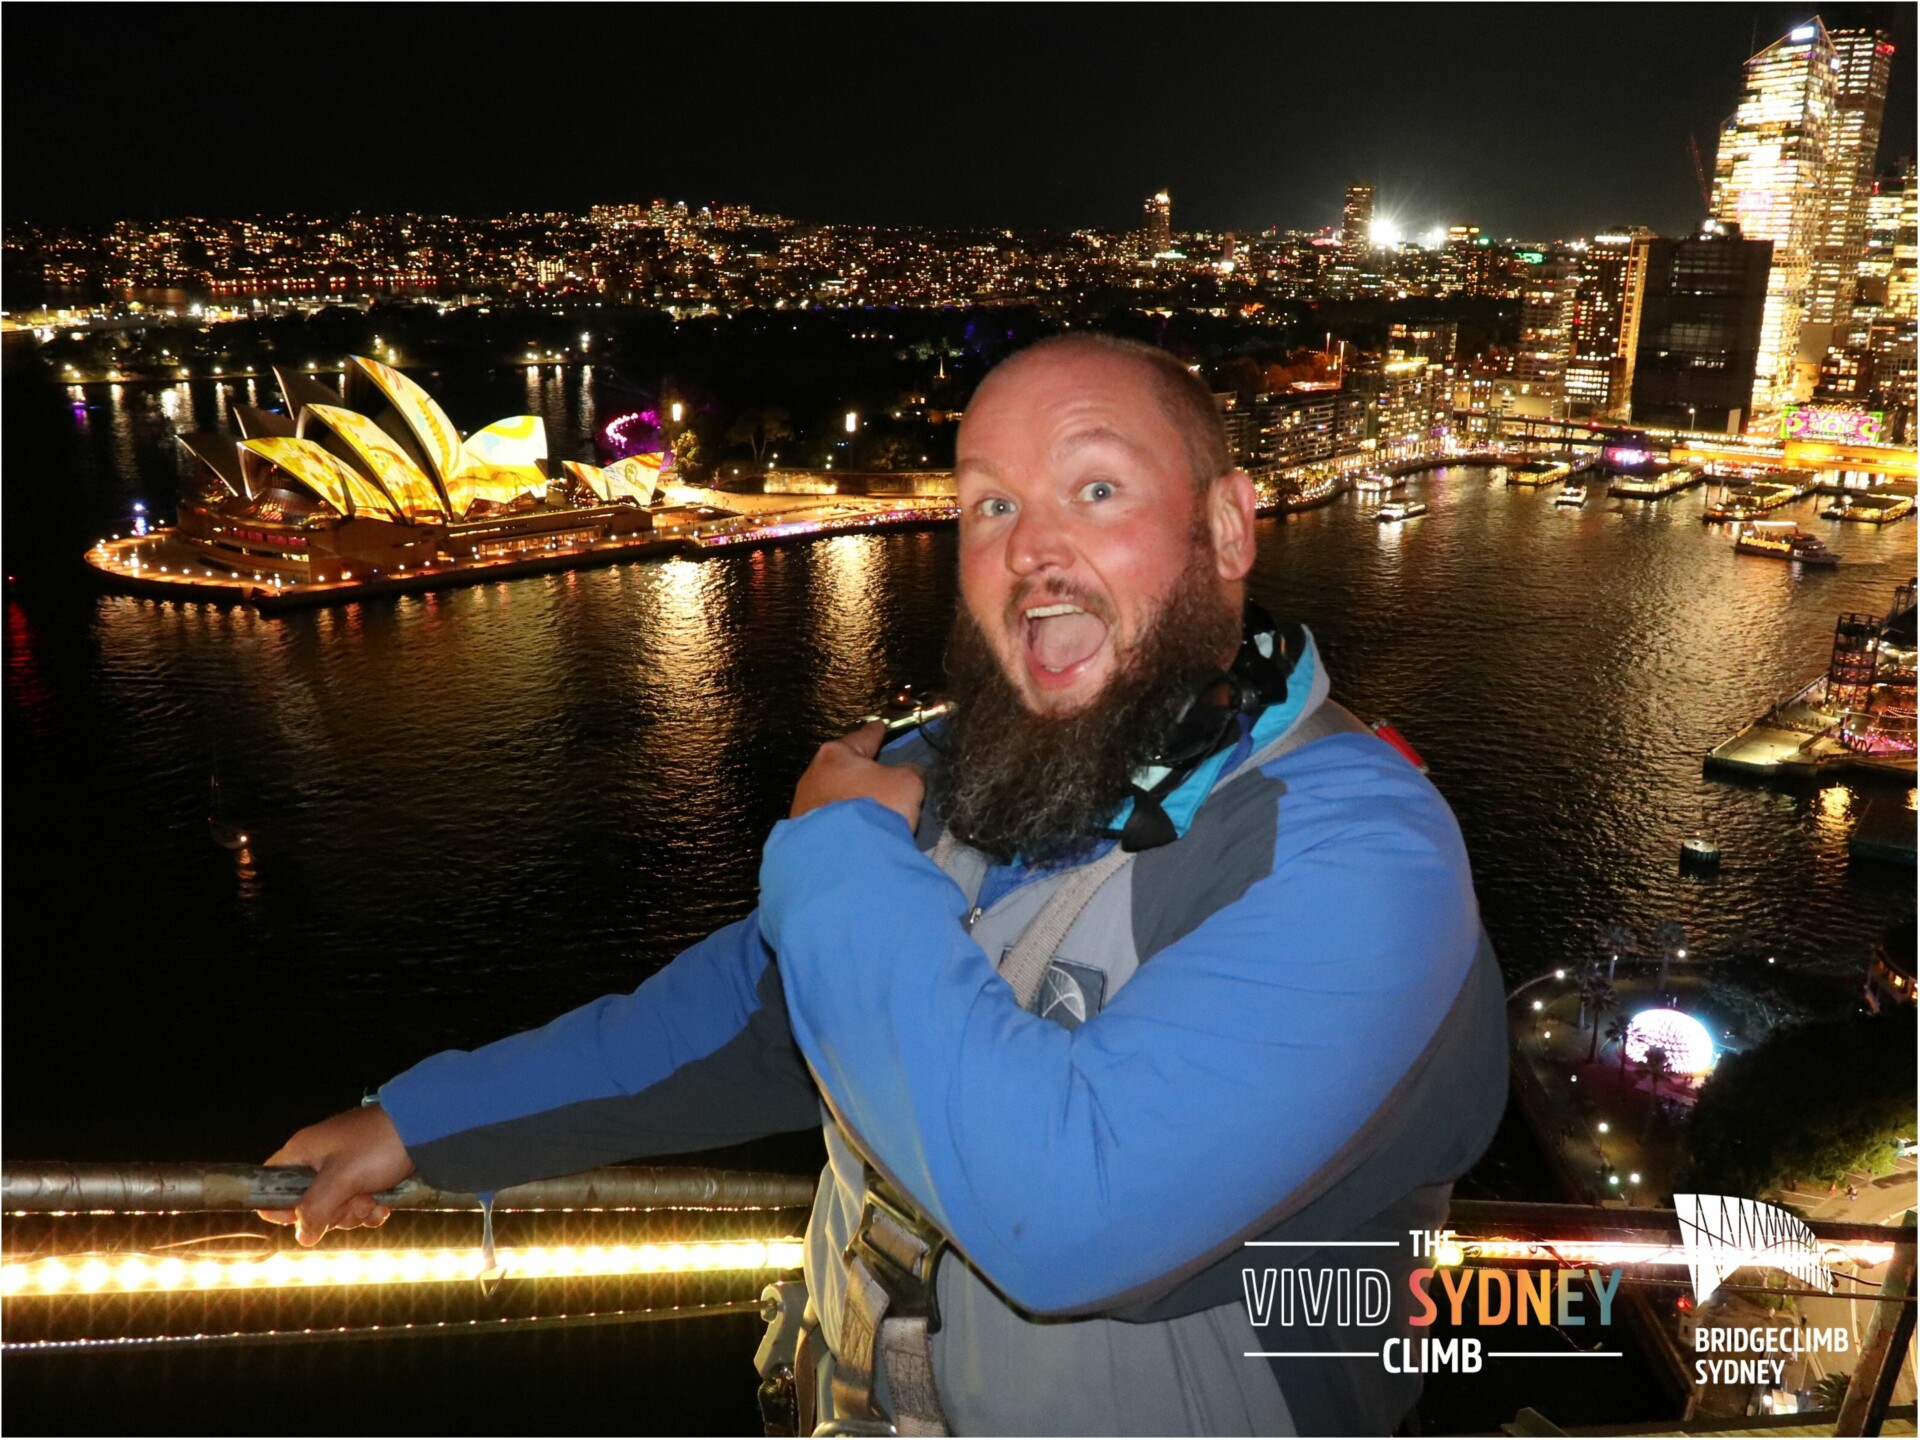 Alternativtext: Mann mit Bart in blauer und grauer Kletterausrüstung posiert glücklich vor der nächtlichen Skyline von Sydney mit betonter Beleuchtung des Sydney Opera House, dem Hafen und umliegenden Gebäuden. Werbung für "The Vivid Sydney Climb" und "BridgeClimb Sydney" ist ebenfalls sichtbar.